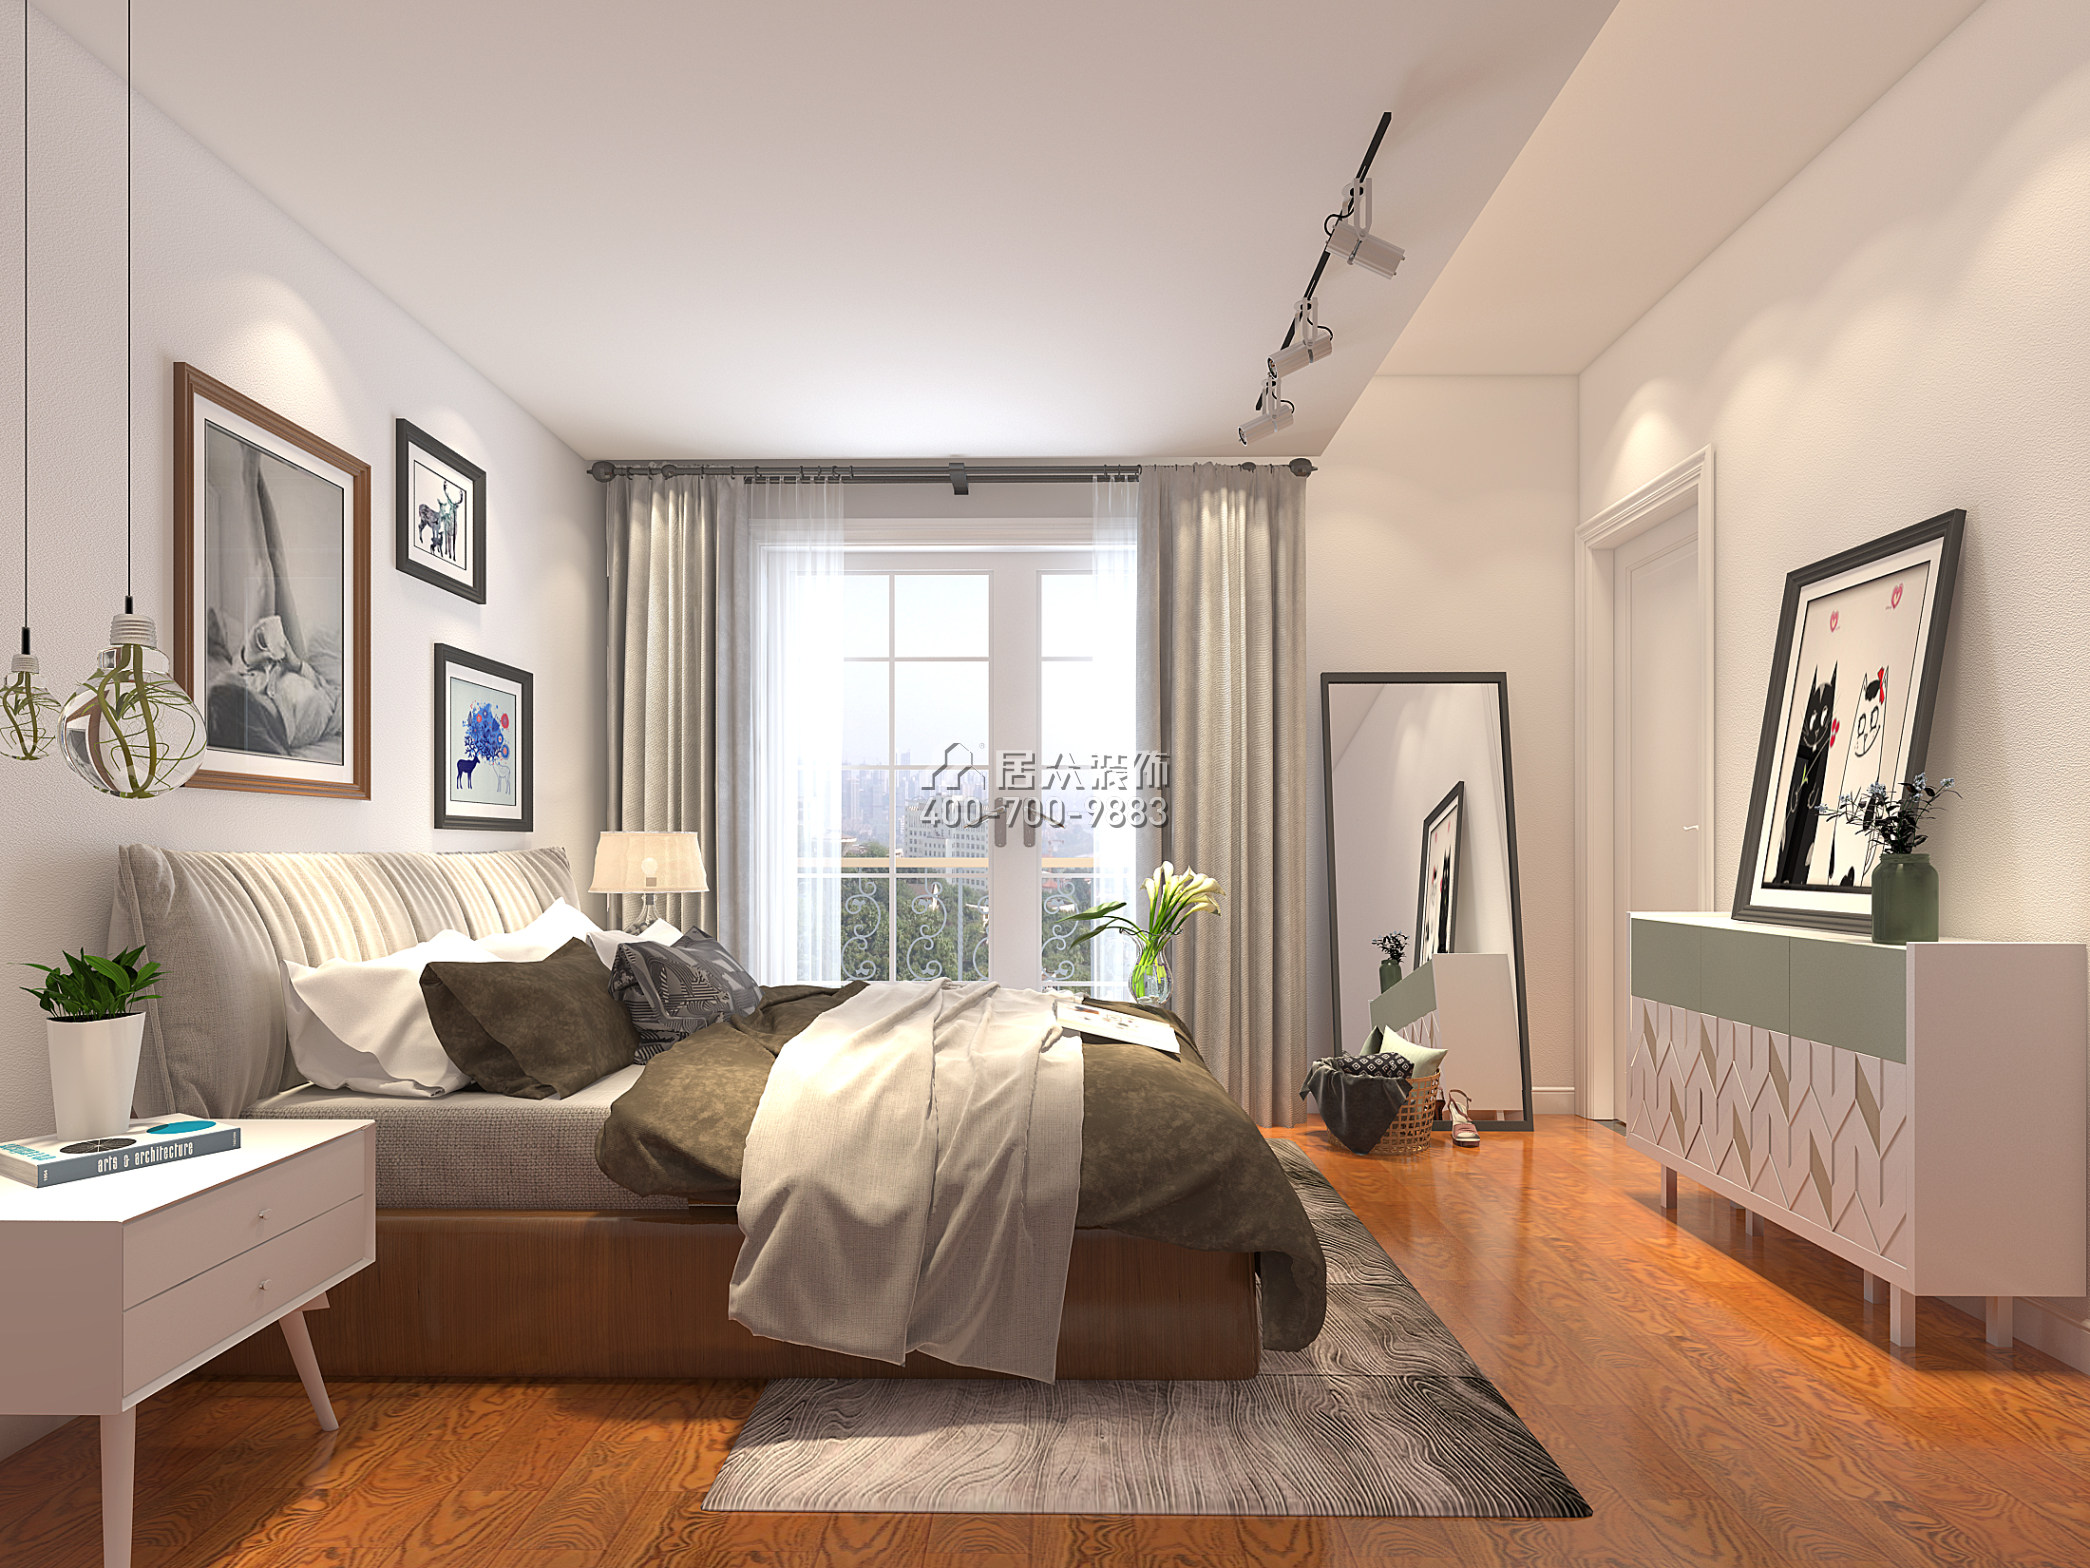 慶隆高爾夫鉆石島360平方米歐式風格別墅戶型臥室裝修效果圖